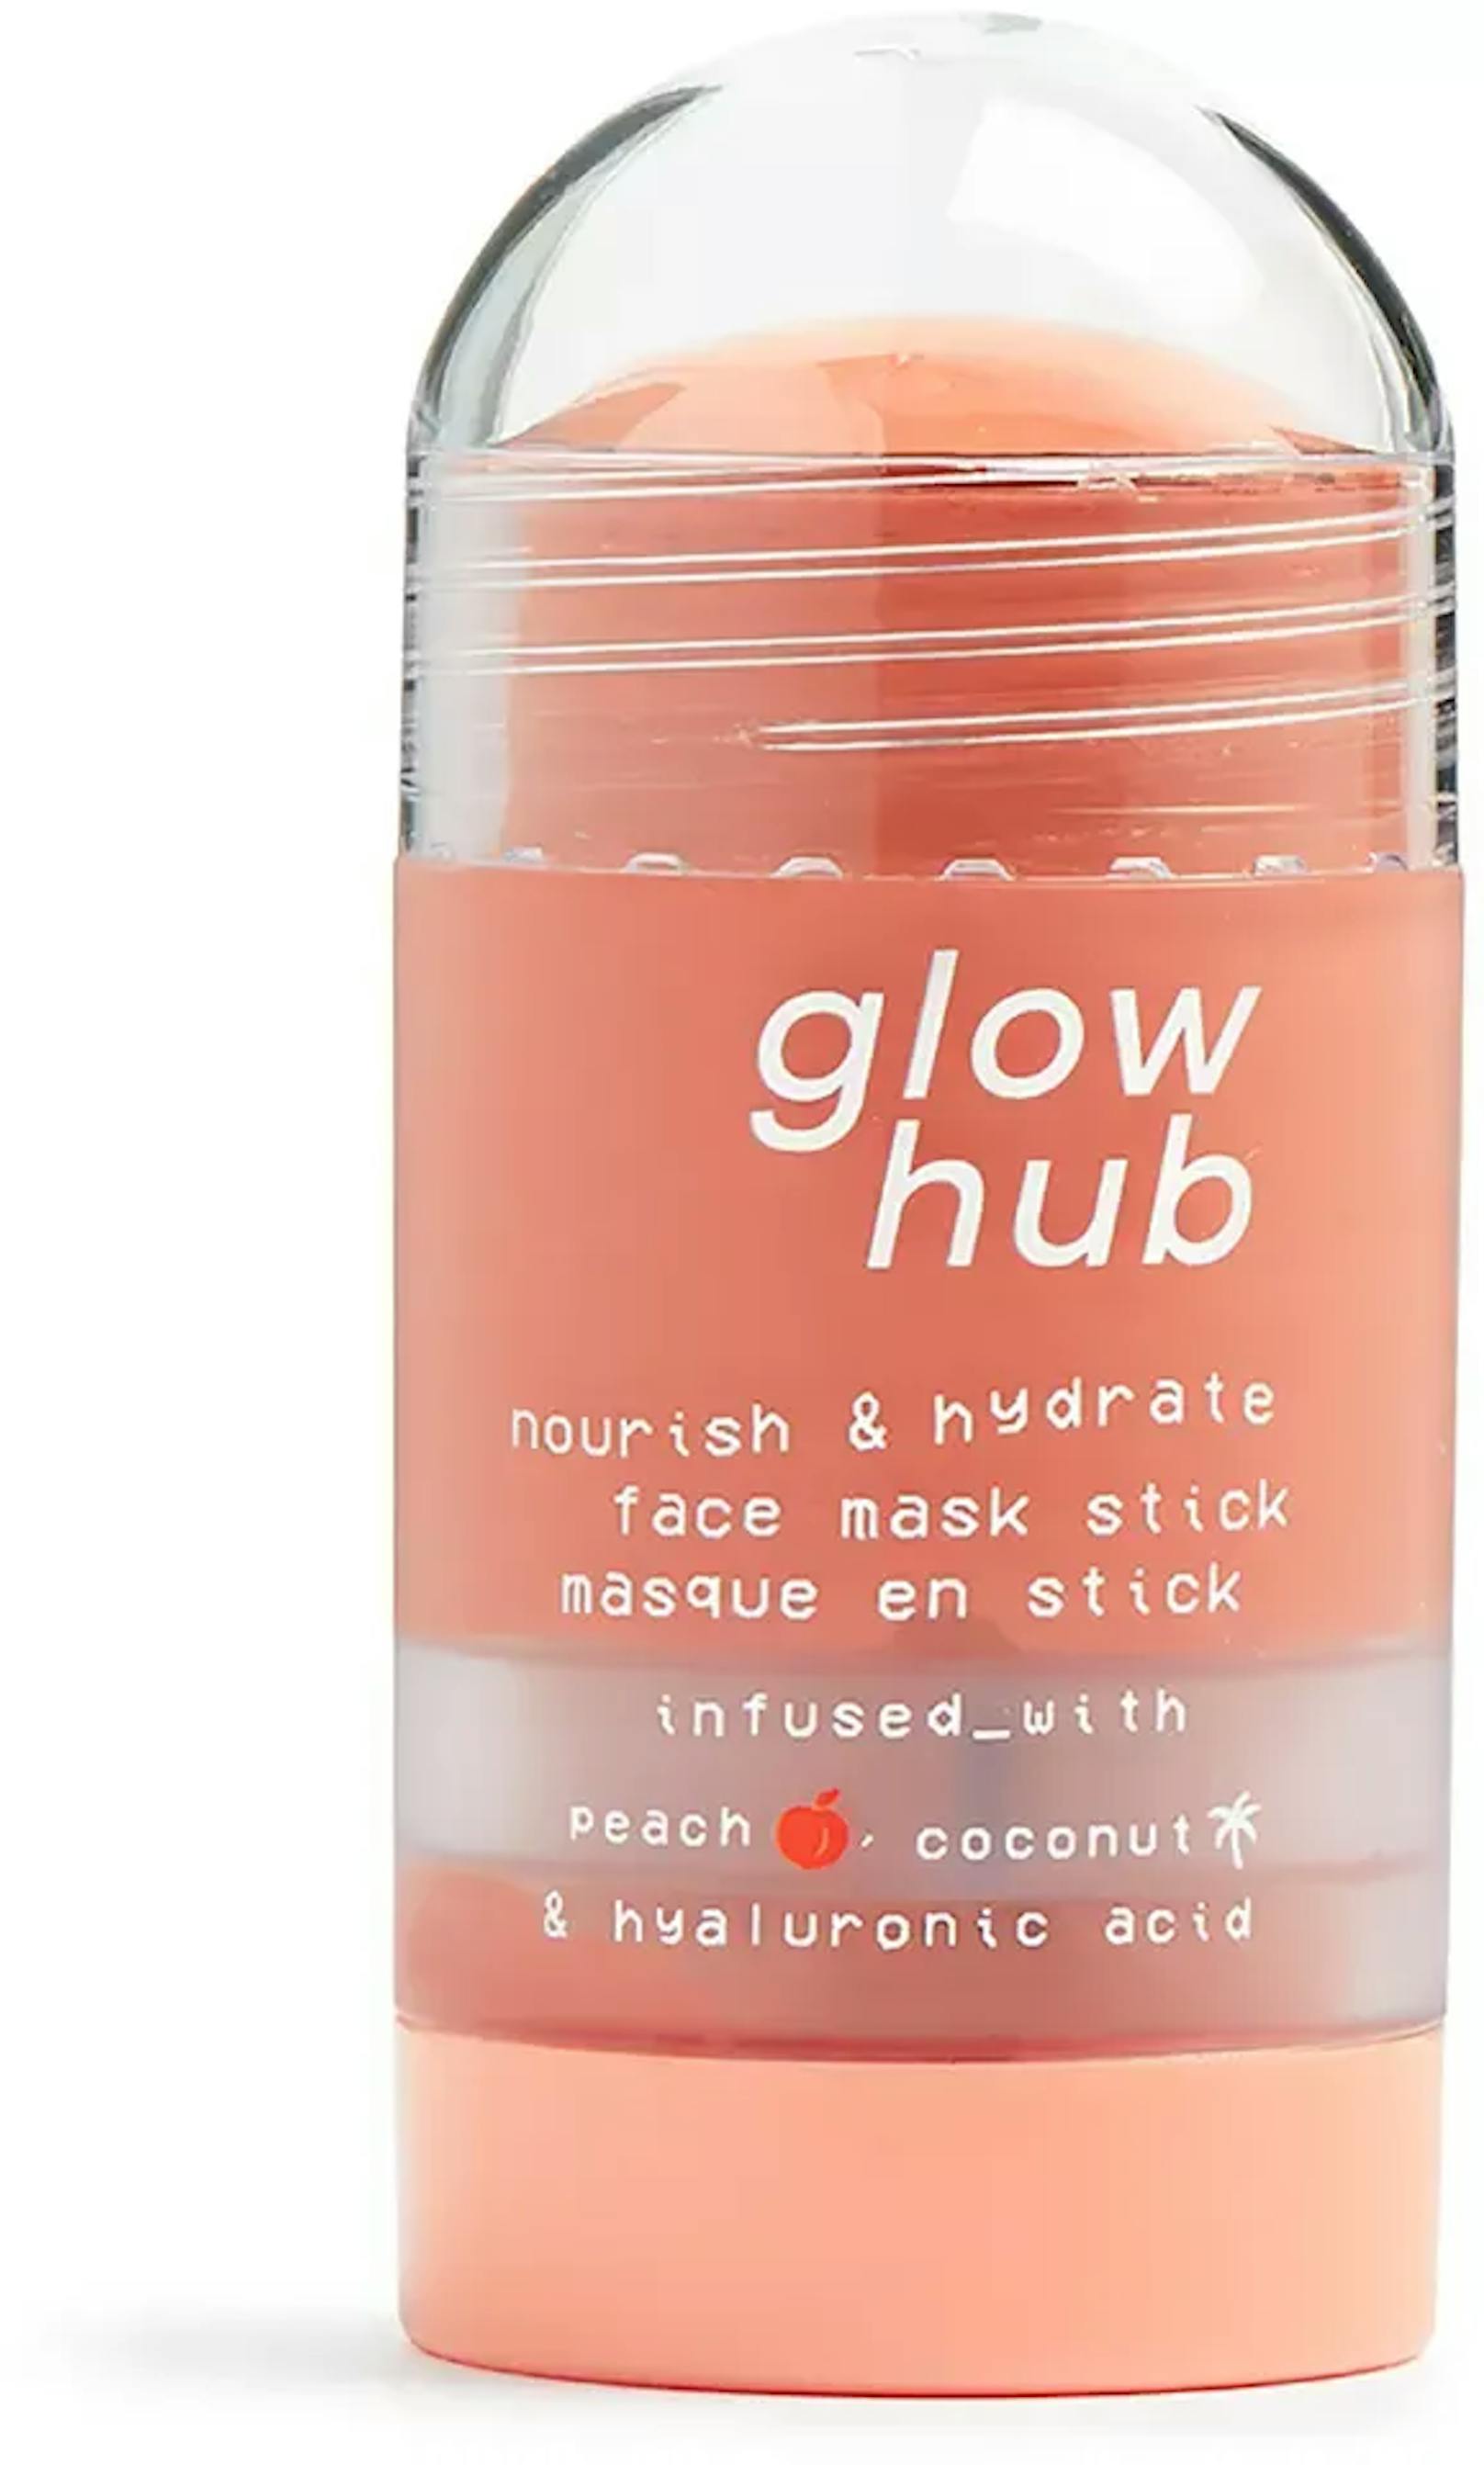 Die regenerierende Gesichtsmaske von Glow Hub versorgt deine Haut nicht nur mit Kokoswasser und Aloe Vera, sondern auch mit ausreichend Hyaluronsäure, um dein Gesicht weich und geschmeidig zu halten.